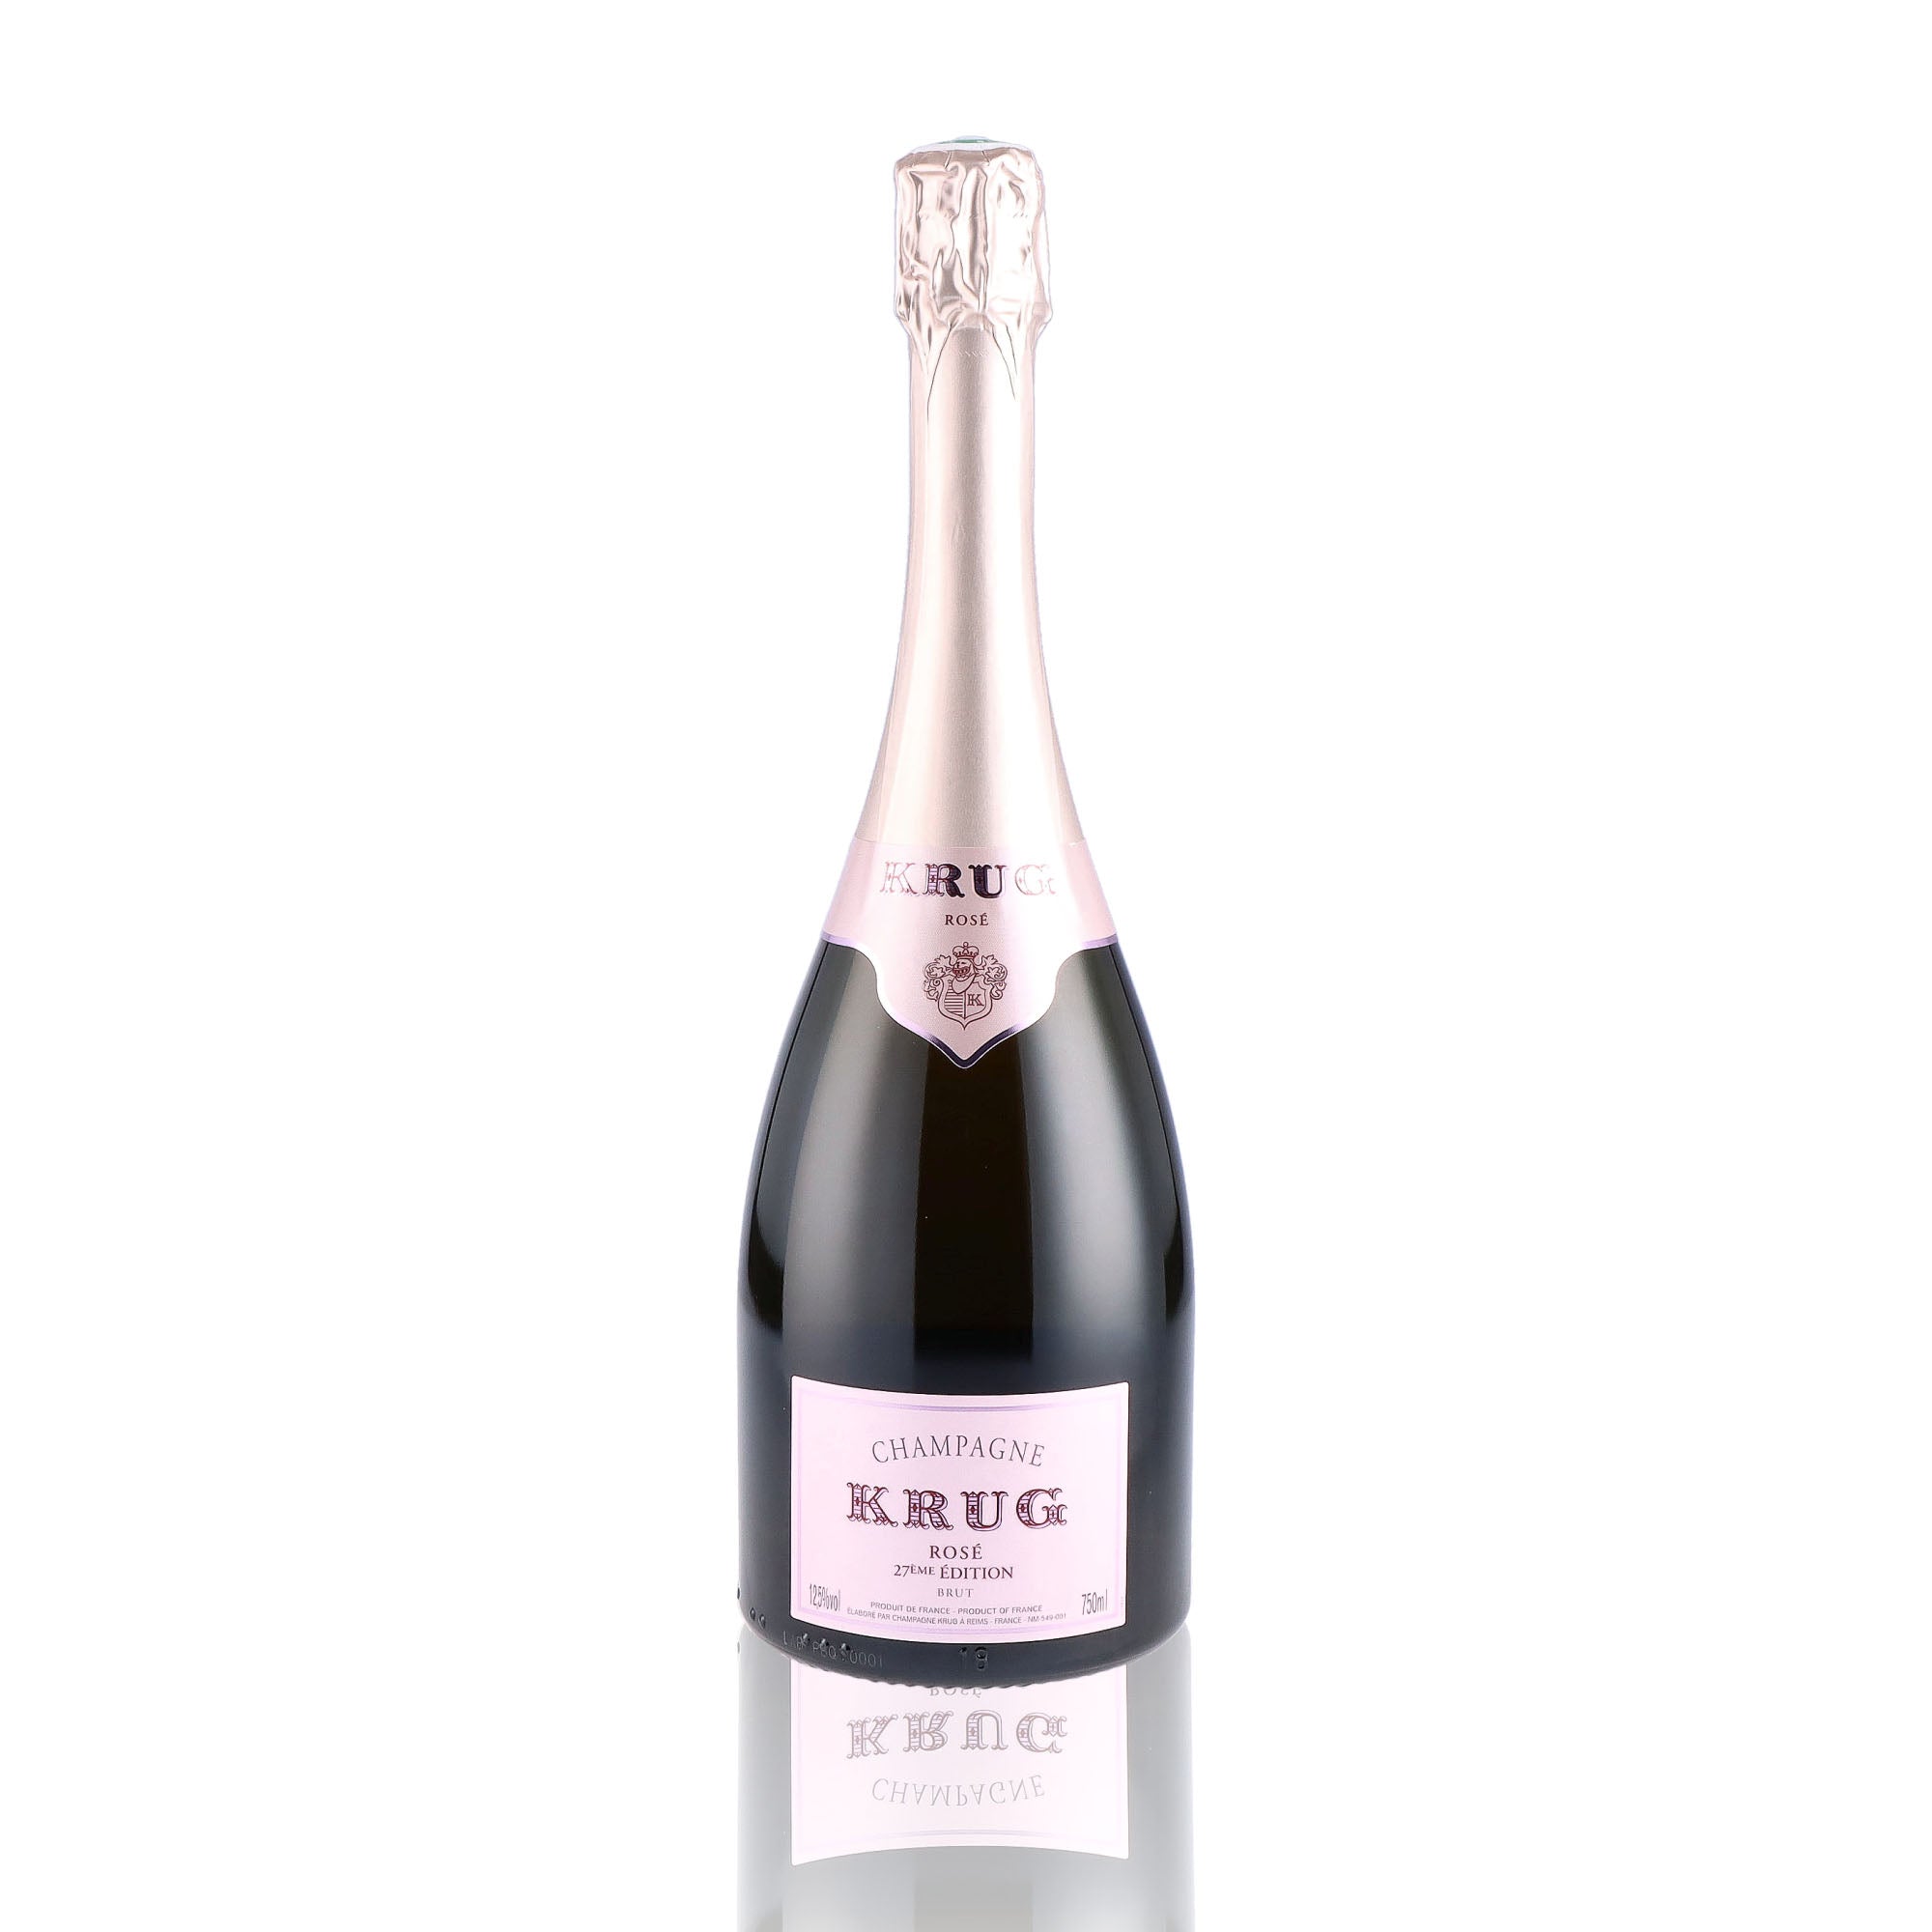 Une bouteille de champagne de la marque Krug, de type rosé, nommée 27ème édition.